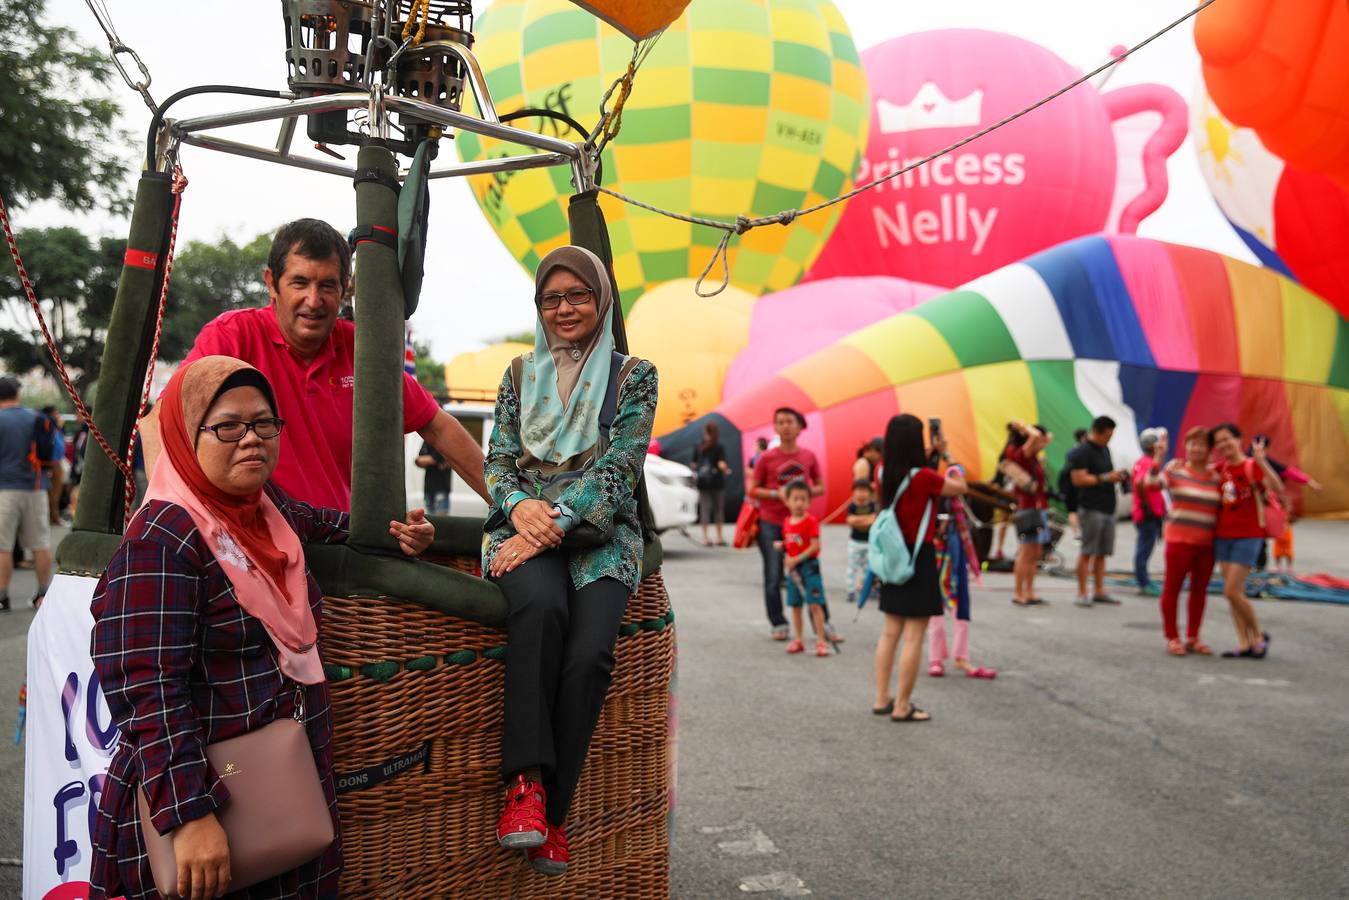 Varias personas asisten a la décima Fiesta Internacional de Globos Aerostáticos de Putrajaya (Malasia). Más de 20 globos aerostáticos volaron por los cielos en la fiesta anual, organizada para promover el turismo y los deportes de aviación. 